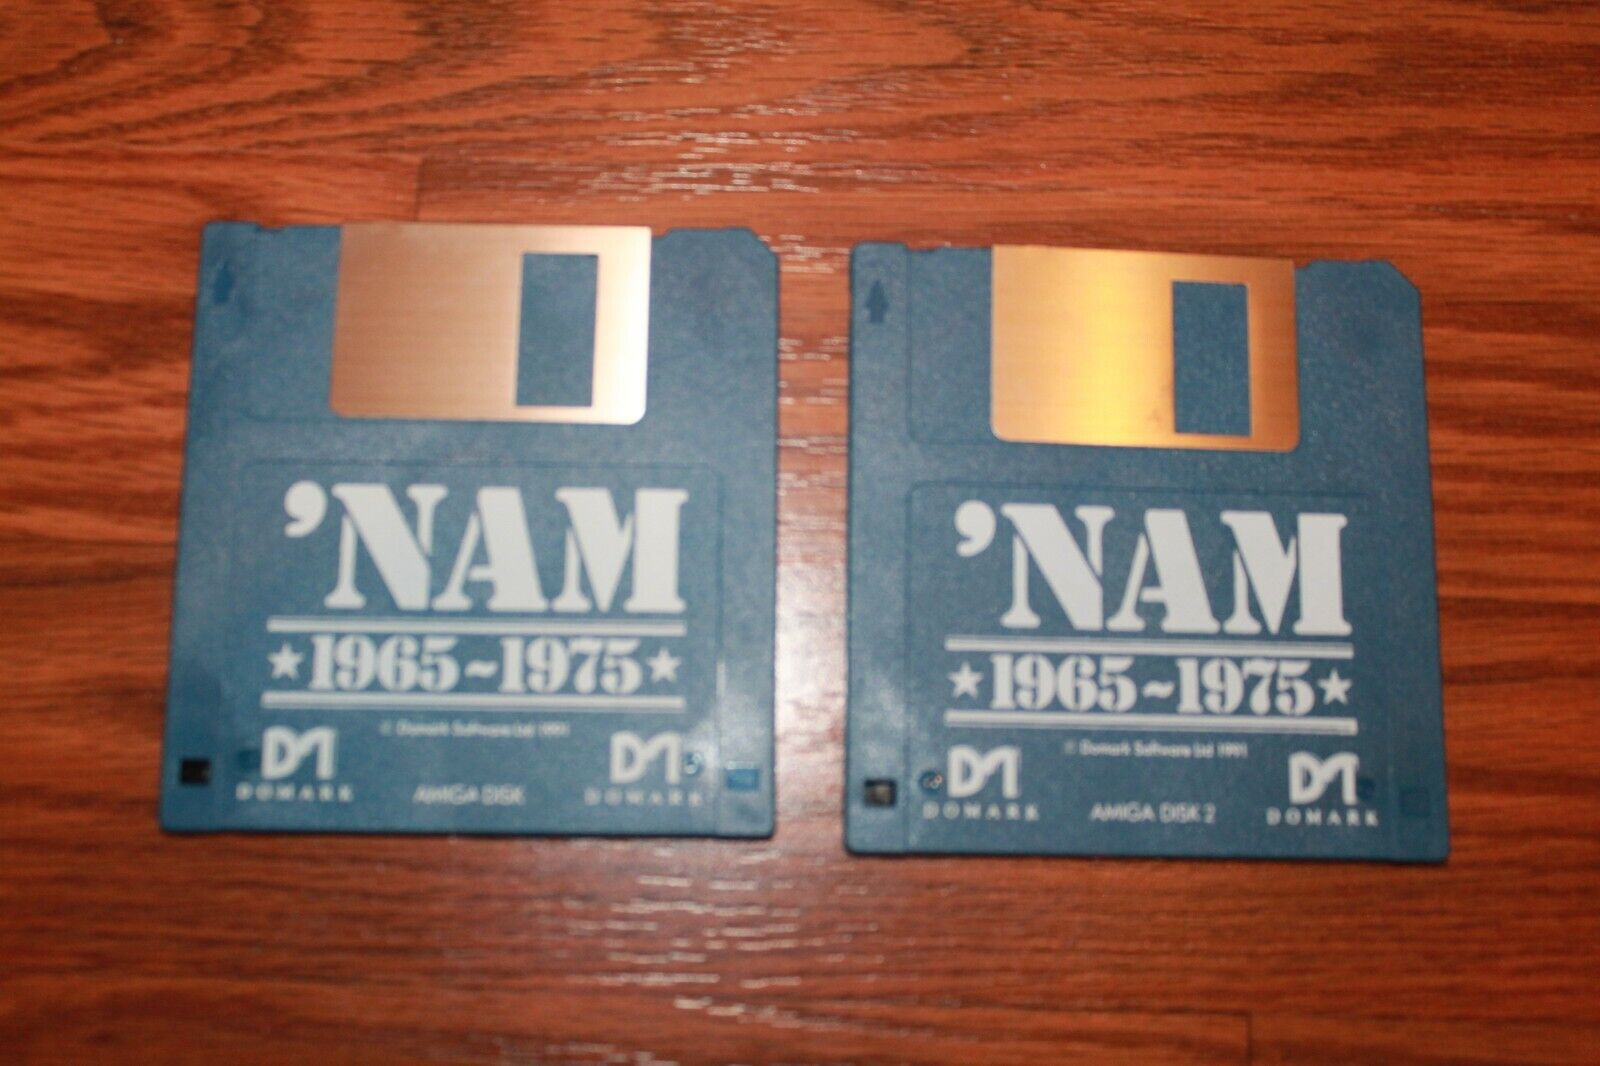 \' Nam 1965-1975 Commodore Amiga on 3.5\